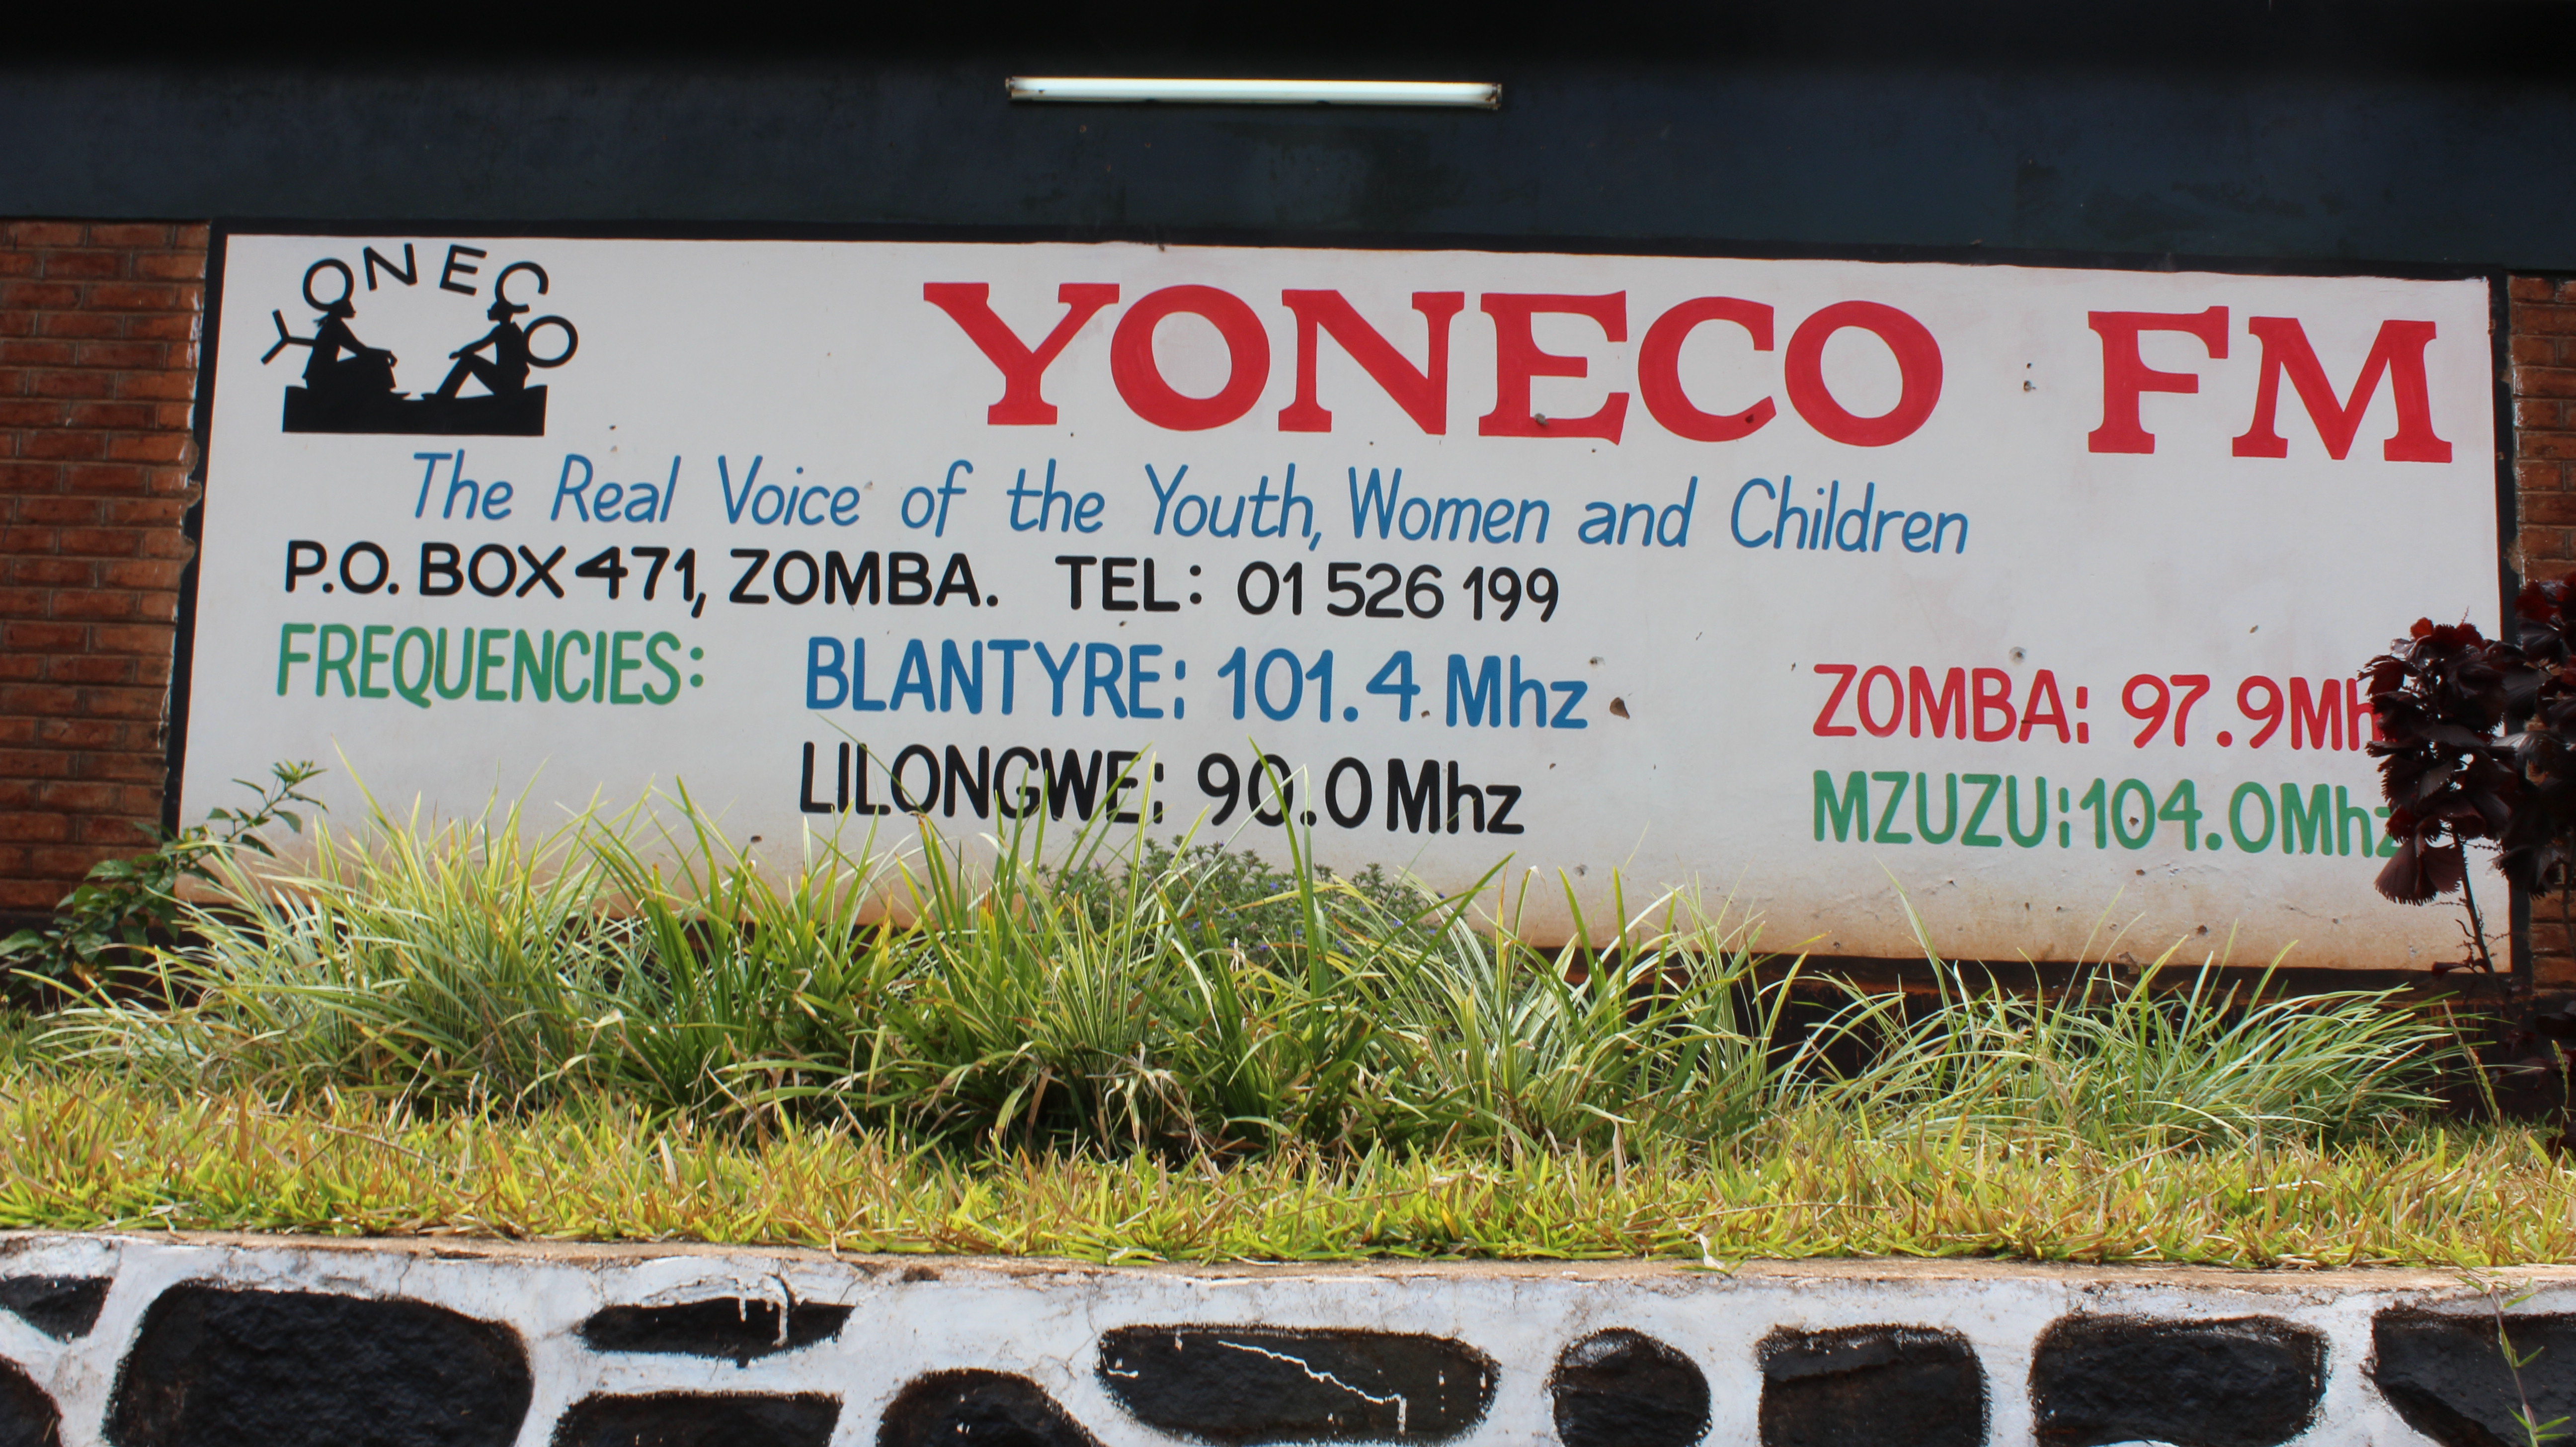 YONECO FM